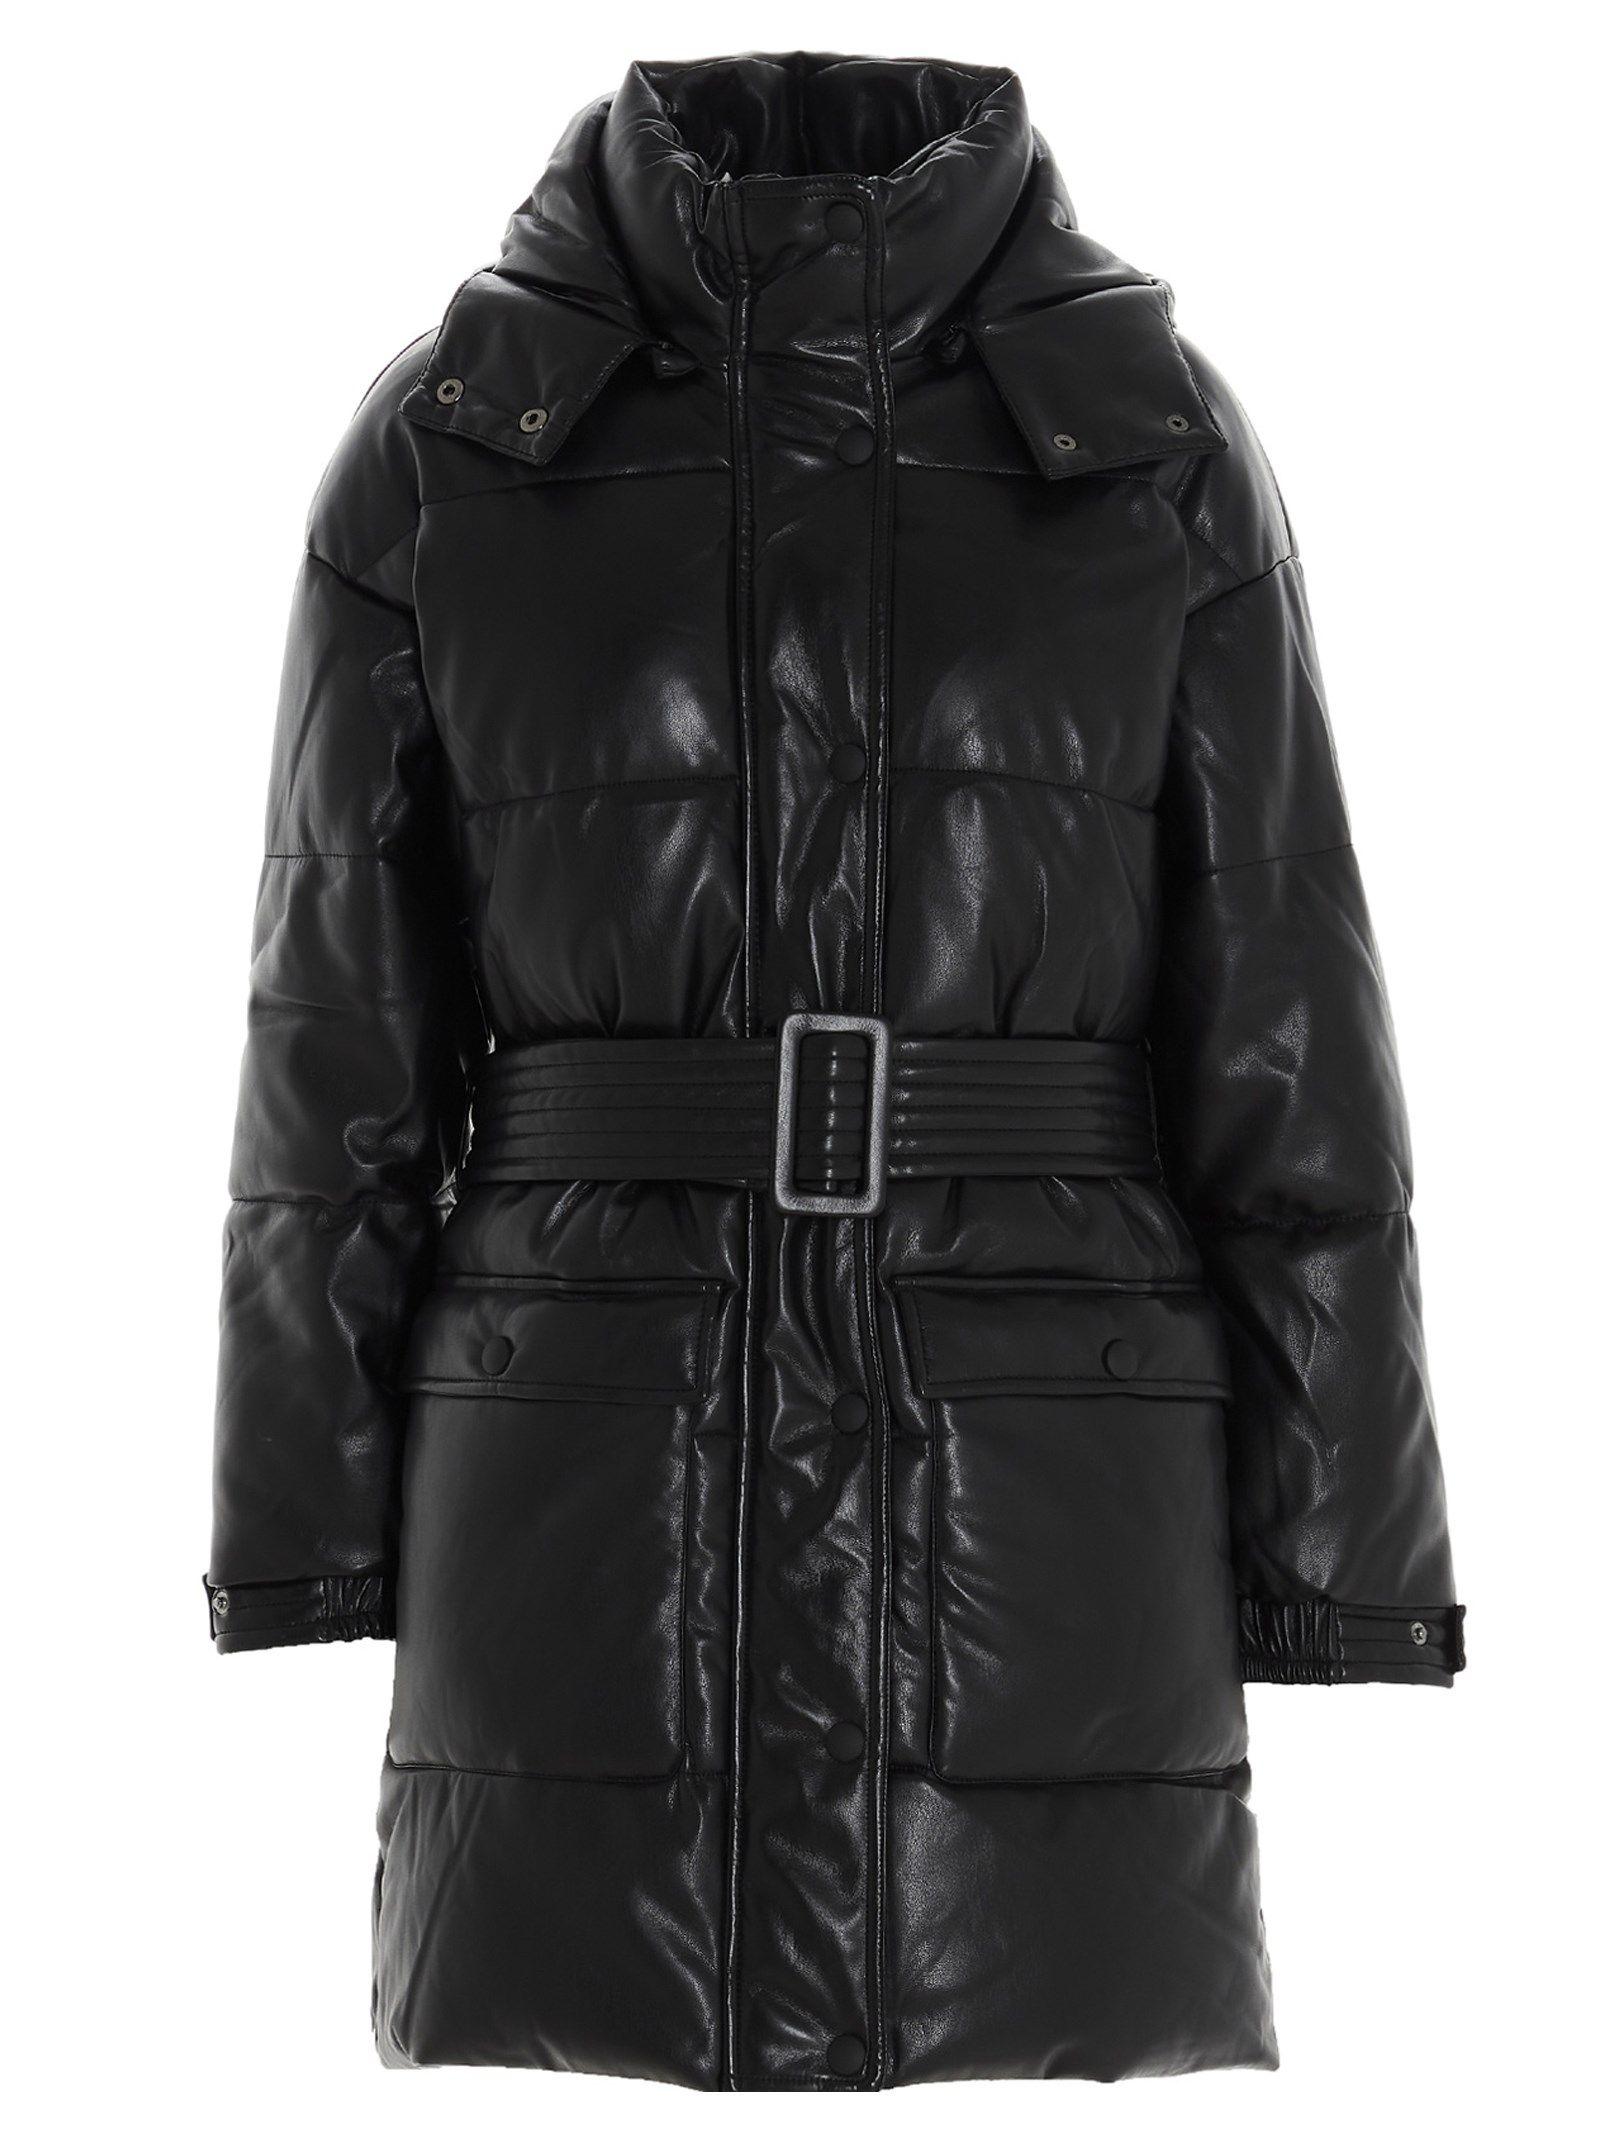 Apparis Outerwear Jacket in Black - Lyst